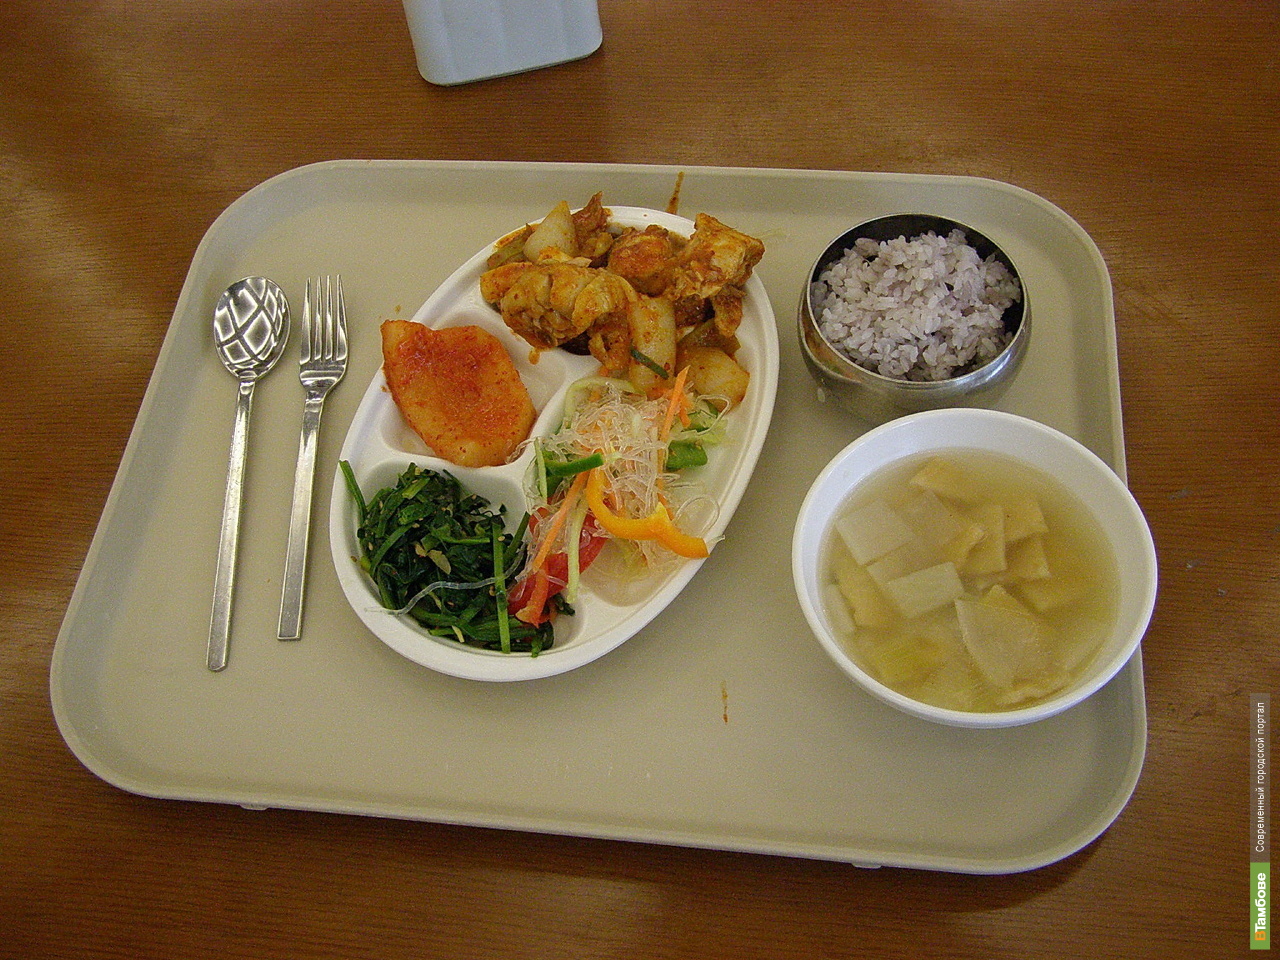 Обед обеденный. Еда в столовой. Обед. Комплексный обед. Стол с едой в столовой.